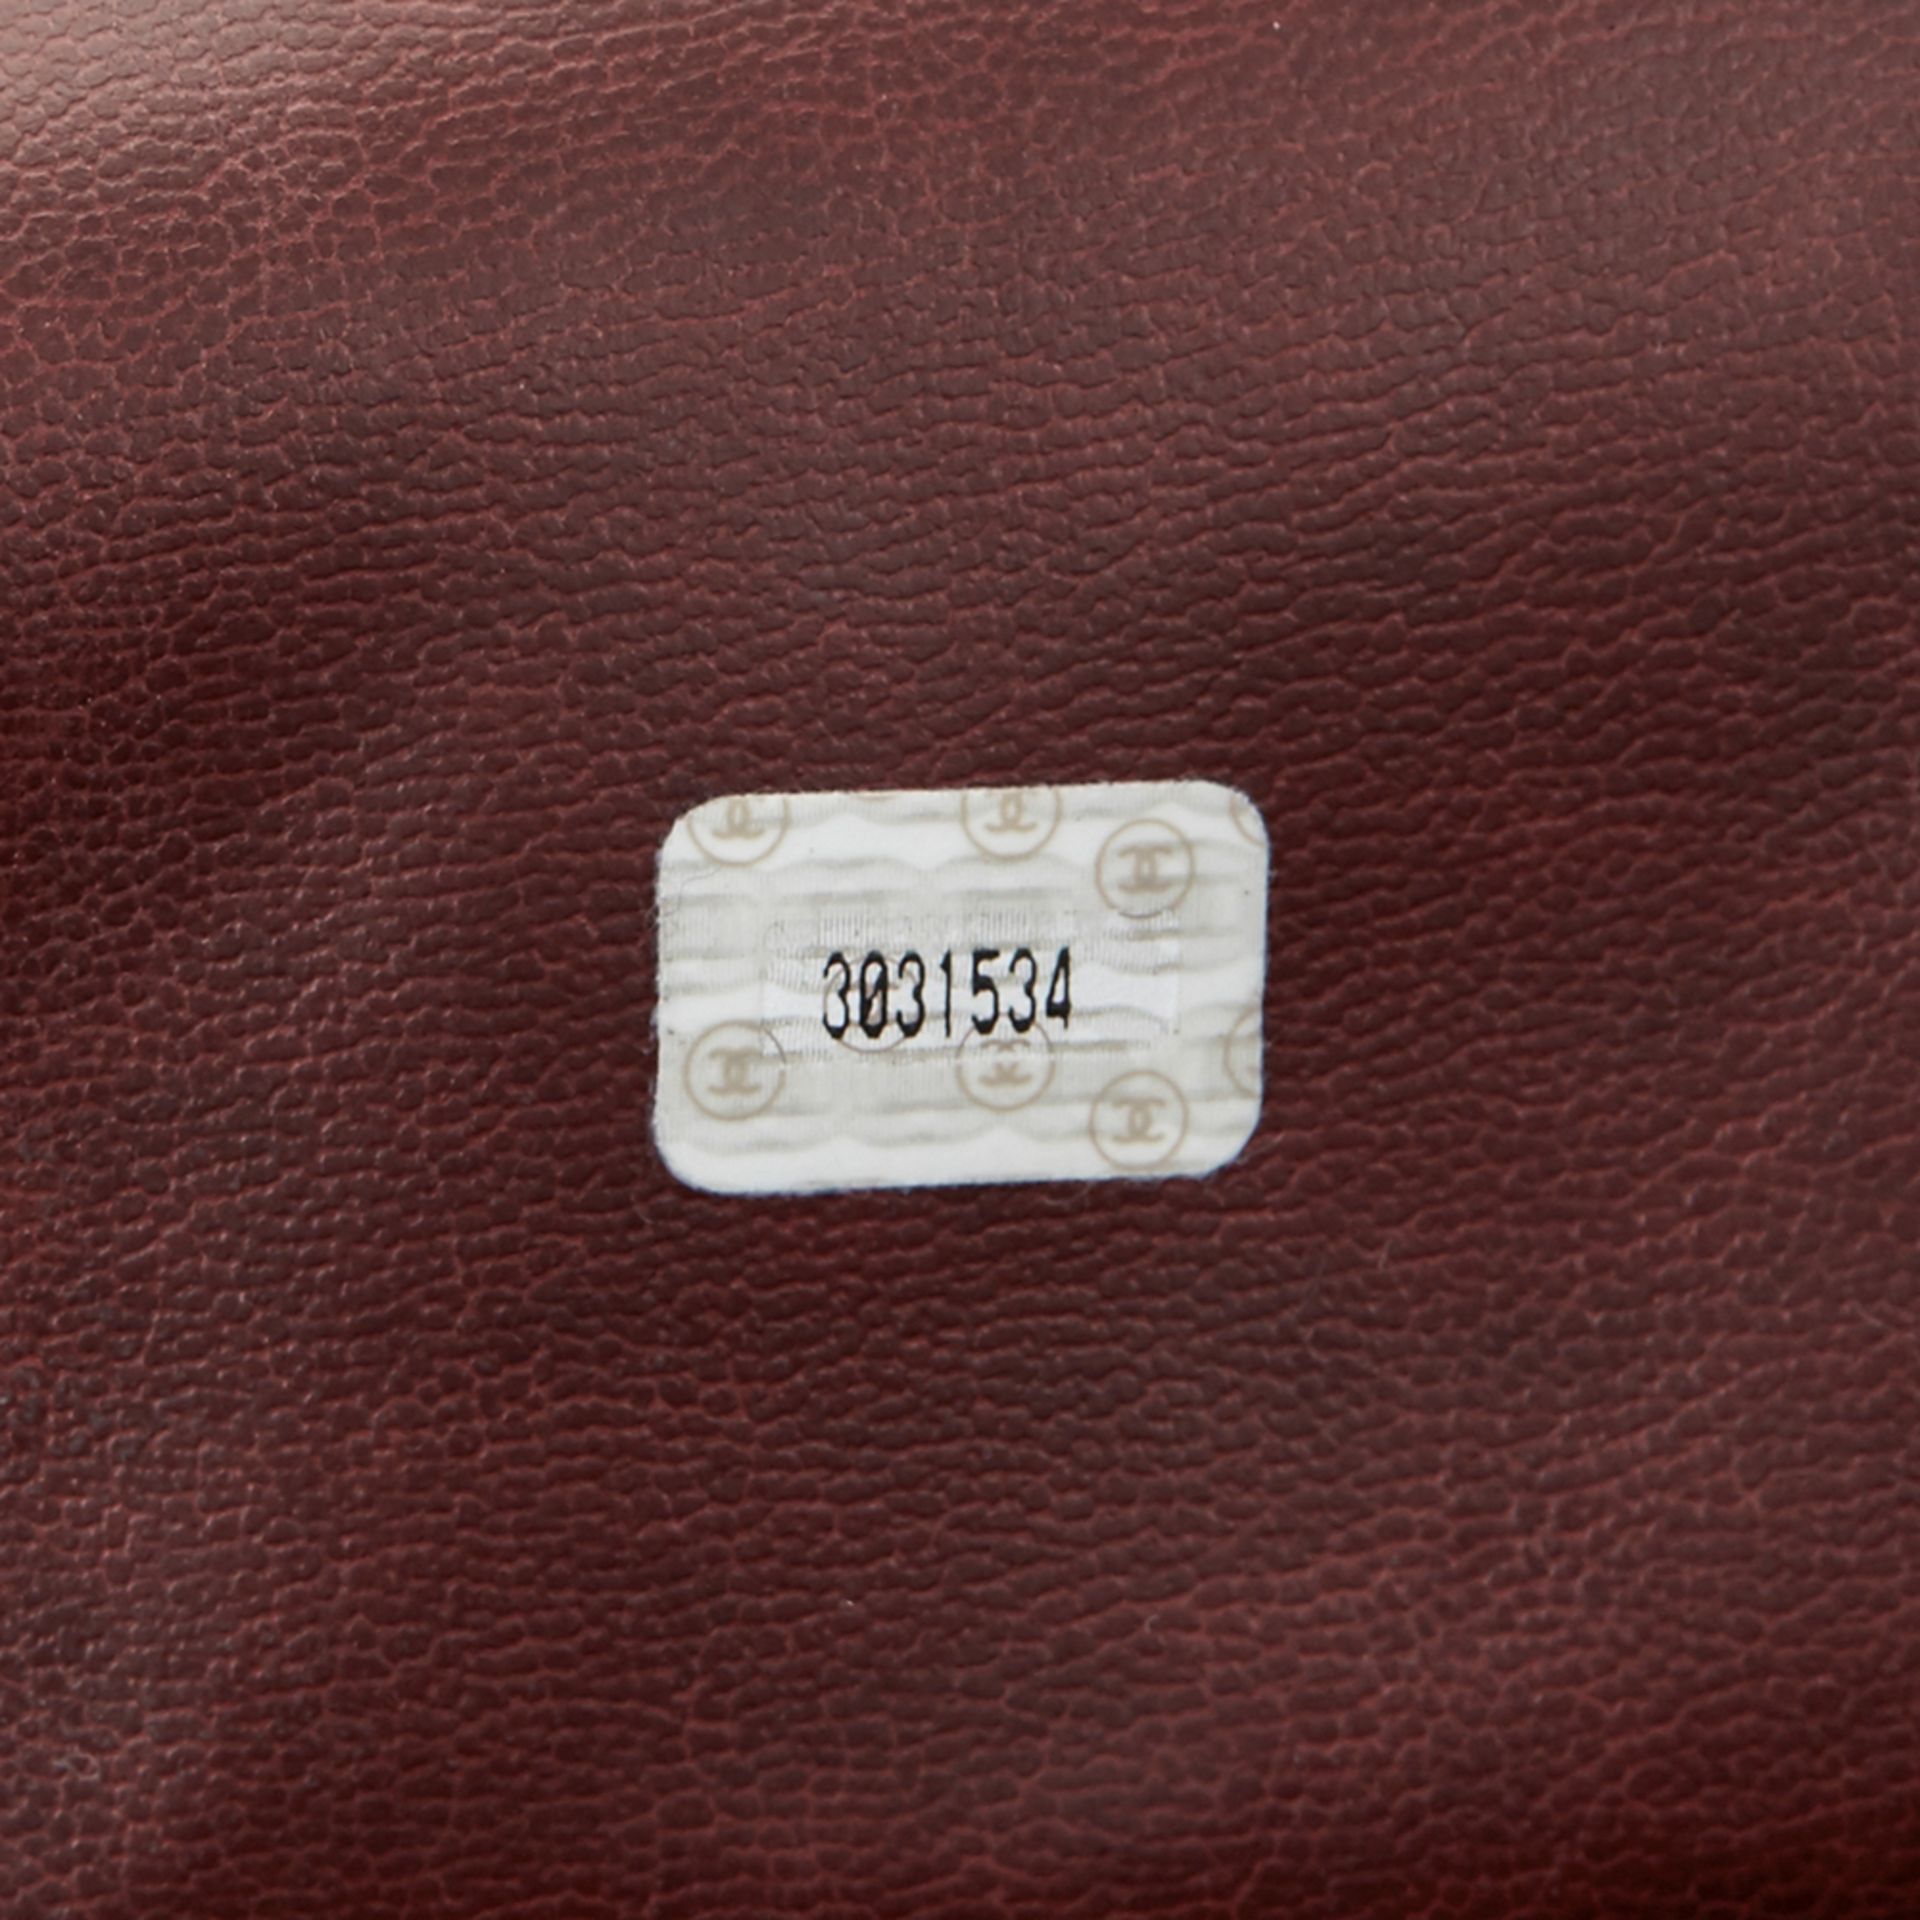 Chanel Plum Quilted Lambskin Vintage Timeless Shoulder Bag - Image 10 of 19